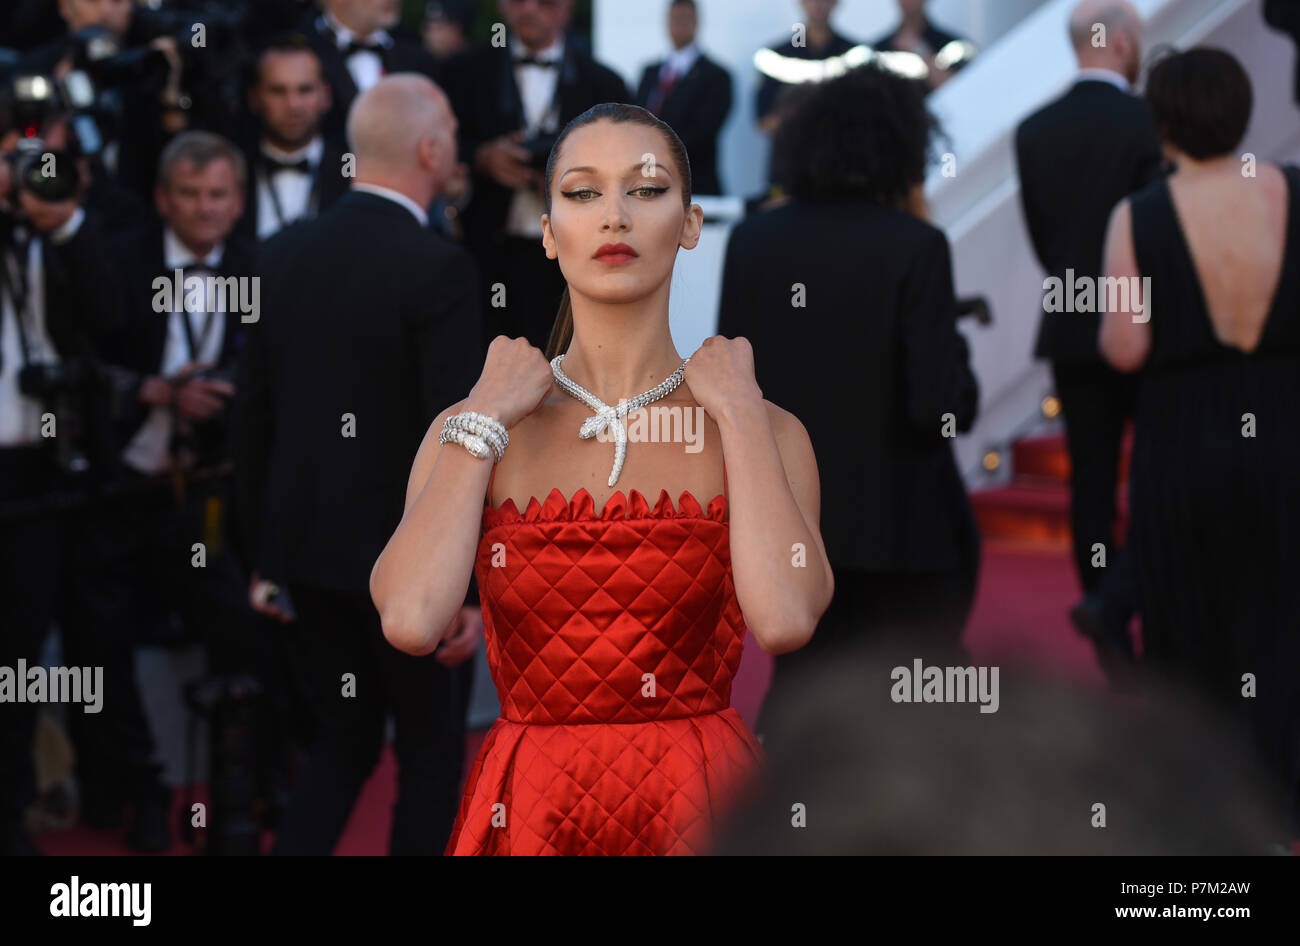 19 maggio 2017 - Cannes, Francia: Bella Hadid assiste il 'Okja' premiere durante il settantesimo Cannes film festival. Bella Hadid Lors du 70eme Festival de Cannes. *** La Francia / NESSUNA VENDITA A MEDIA FRANCESI *** Foto Stock